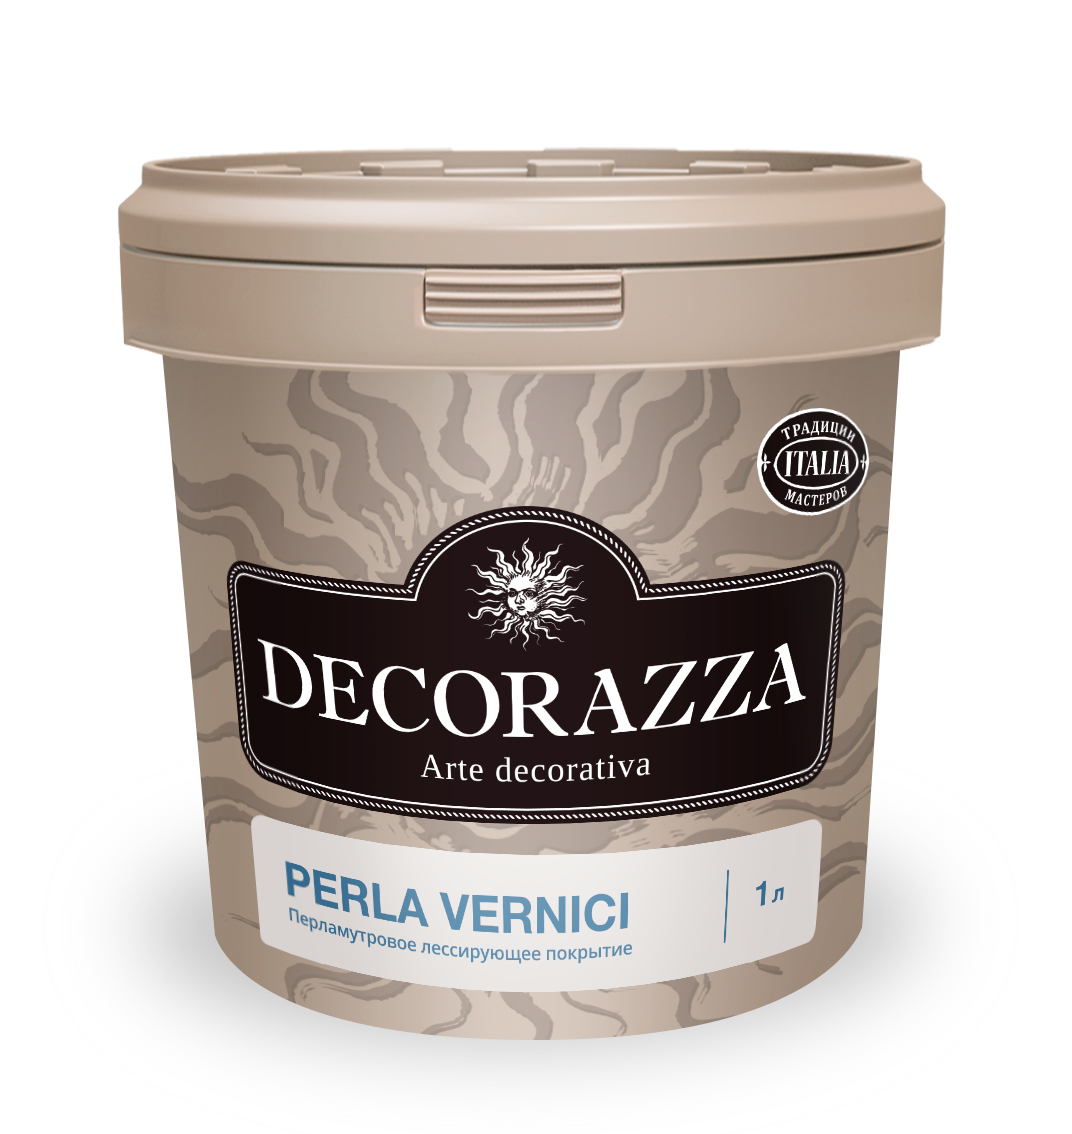 Покрытие Decorazza Perla Vernici 001 Argento, перламутровое, 1 л